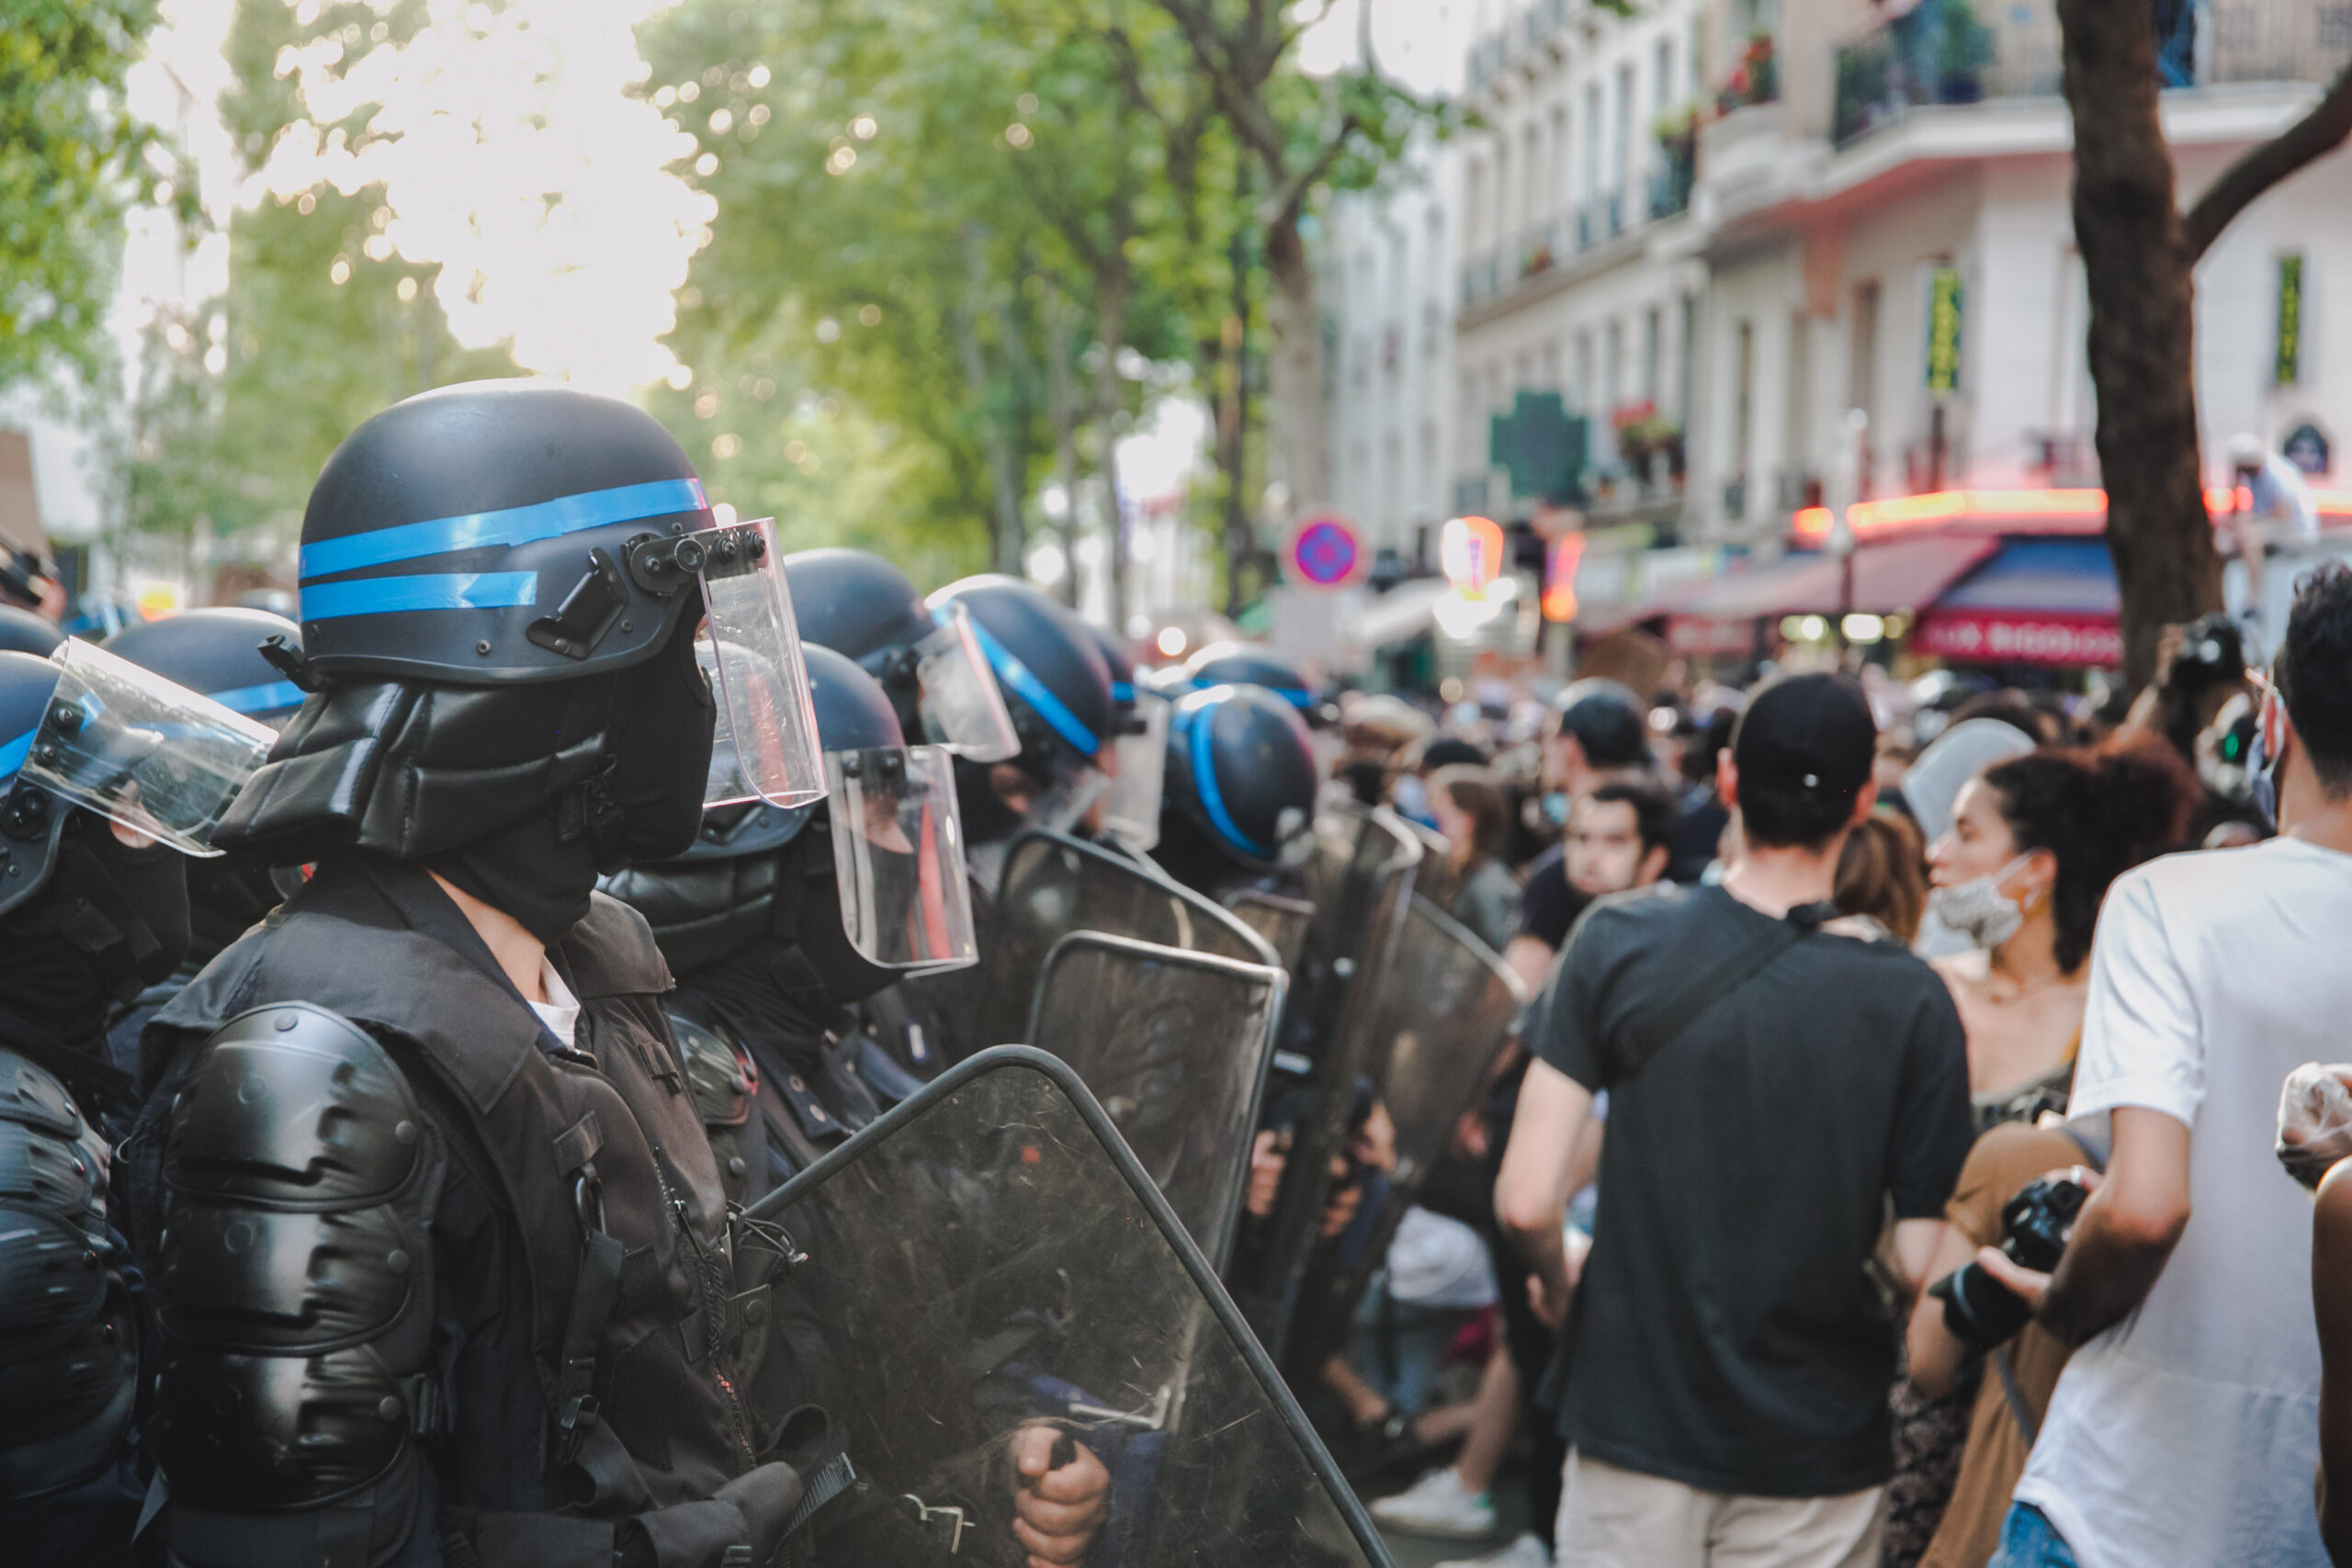 Gedenkdemo in Paris: Keine Gerechtigkeit, nur Repression